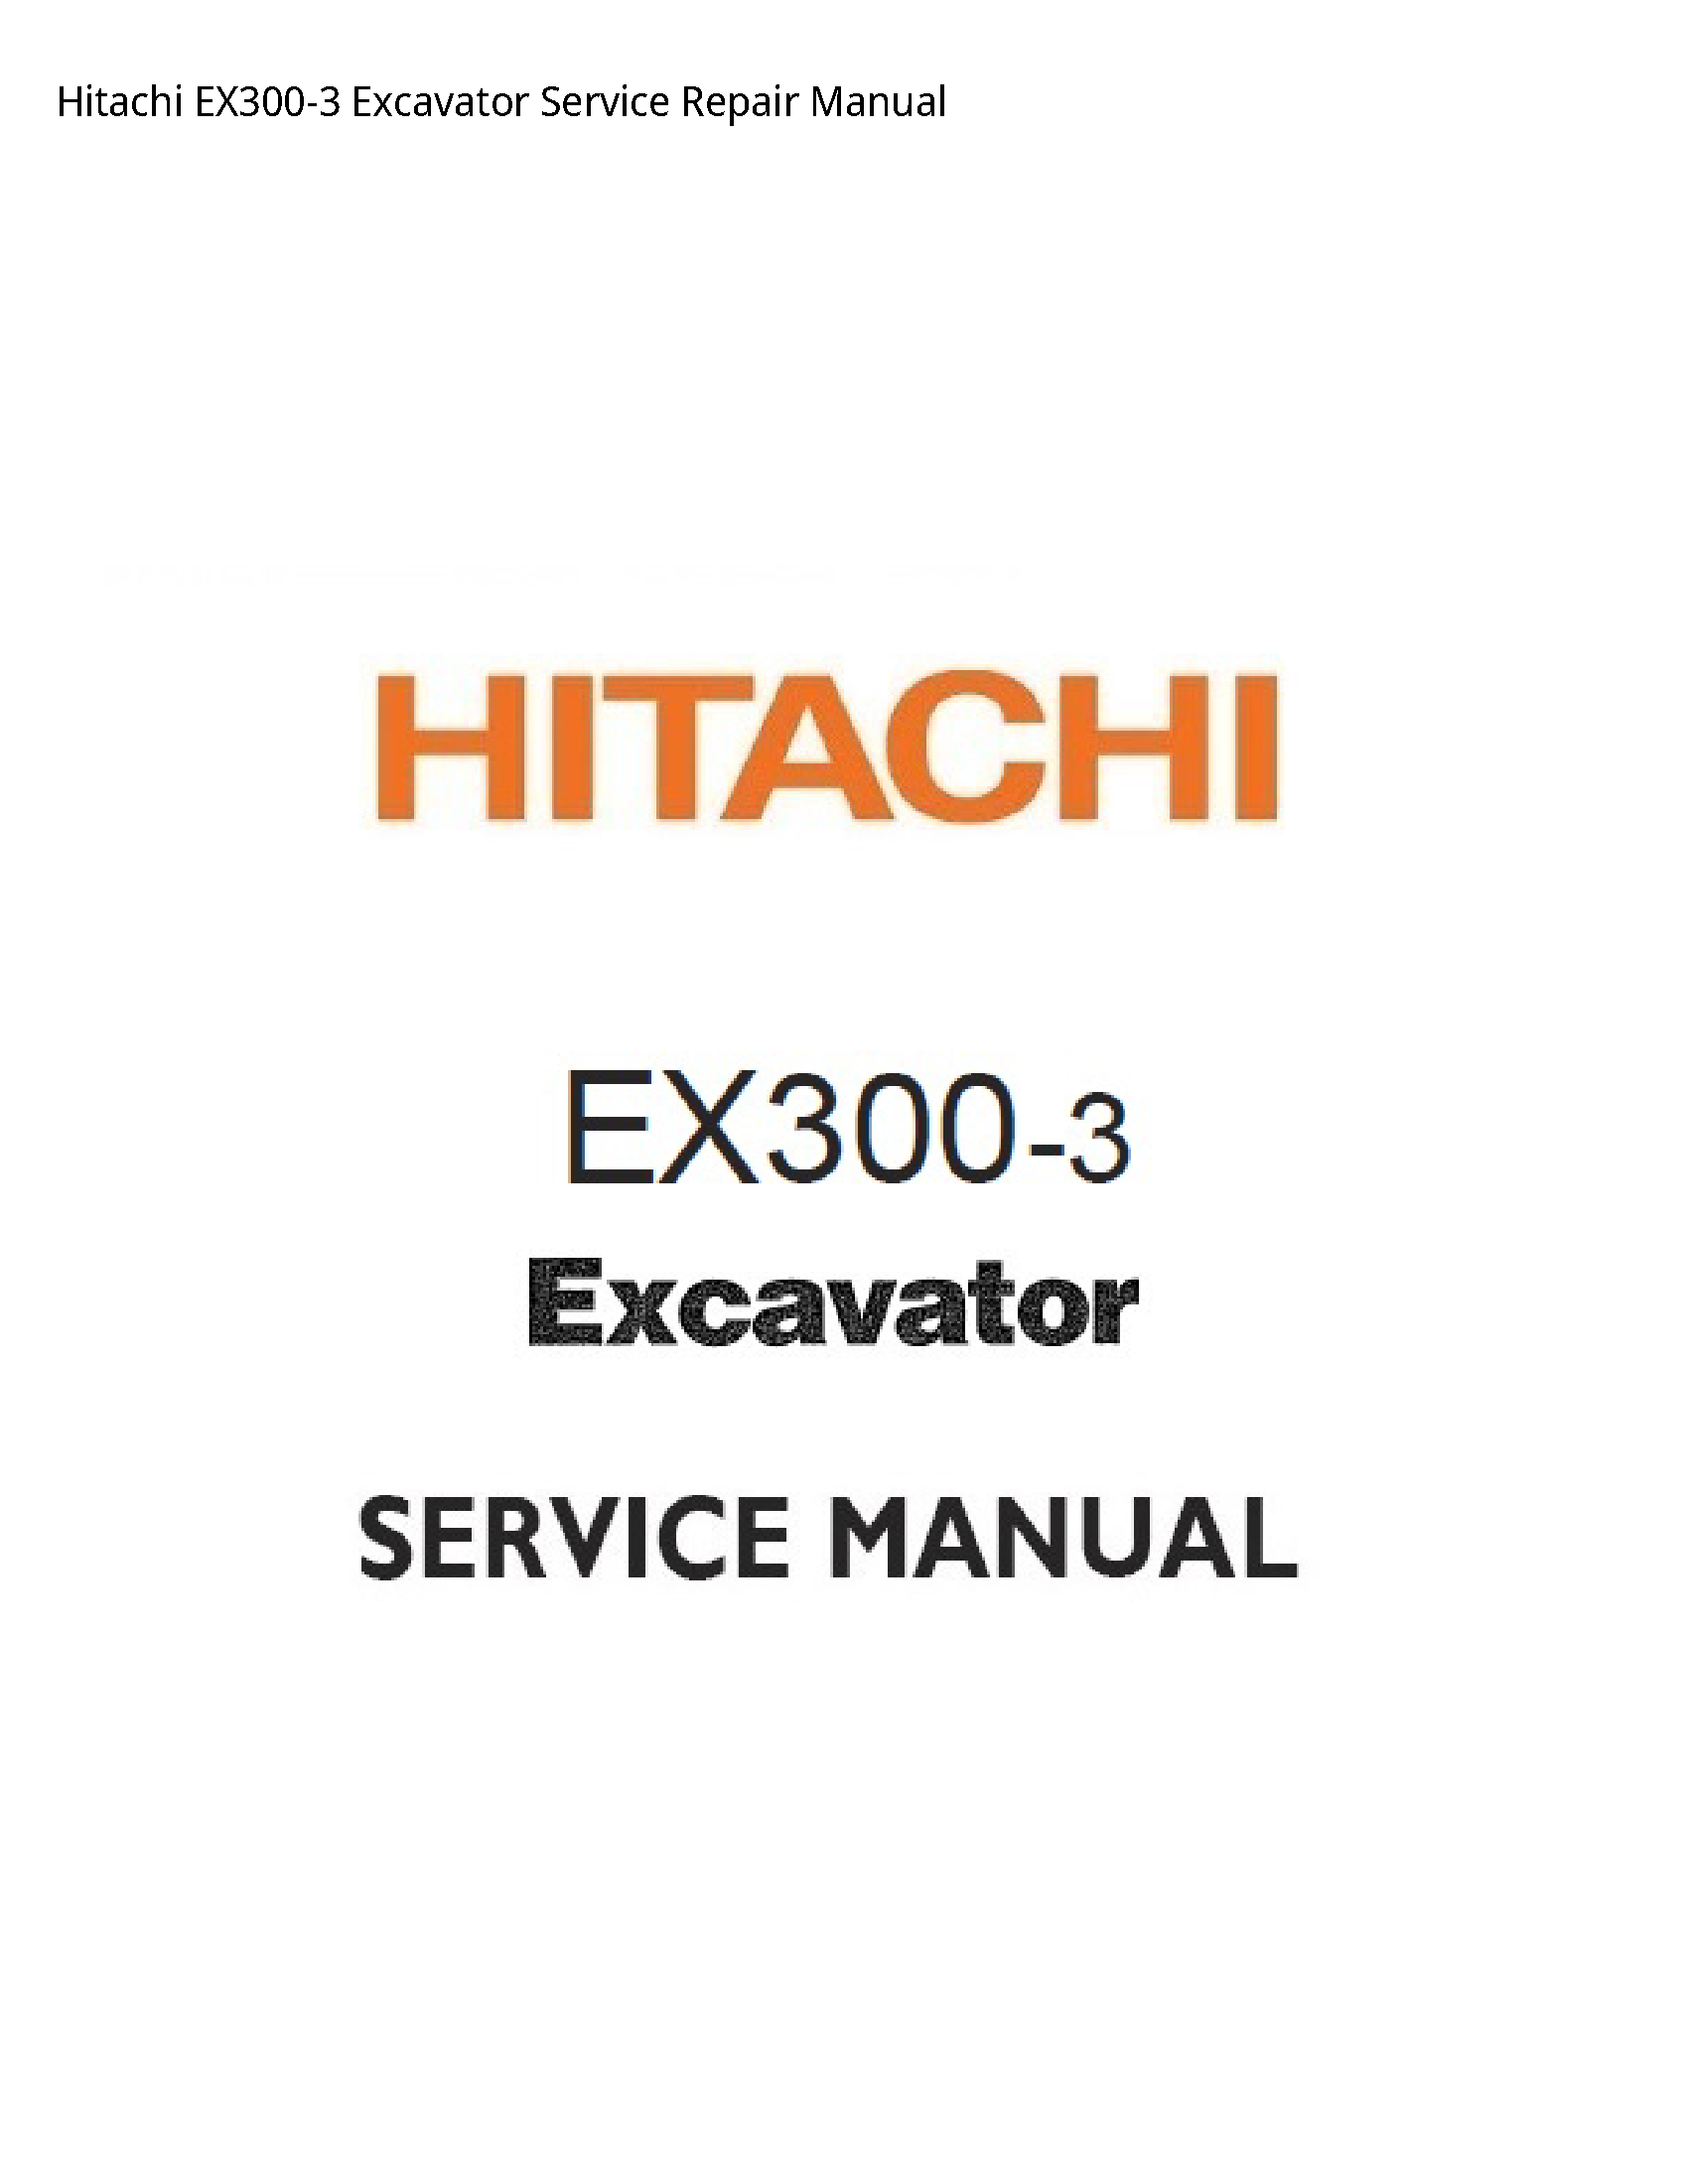 Hitachi EX300-3 Excavator manual